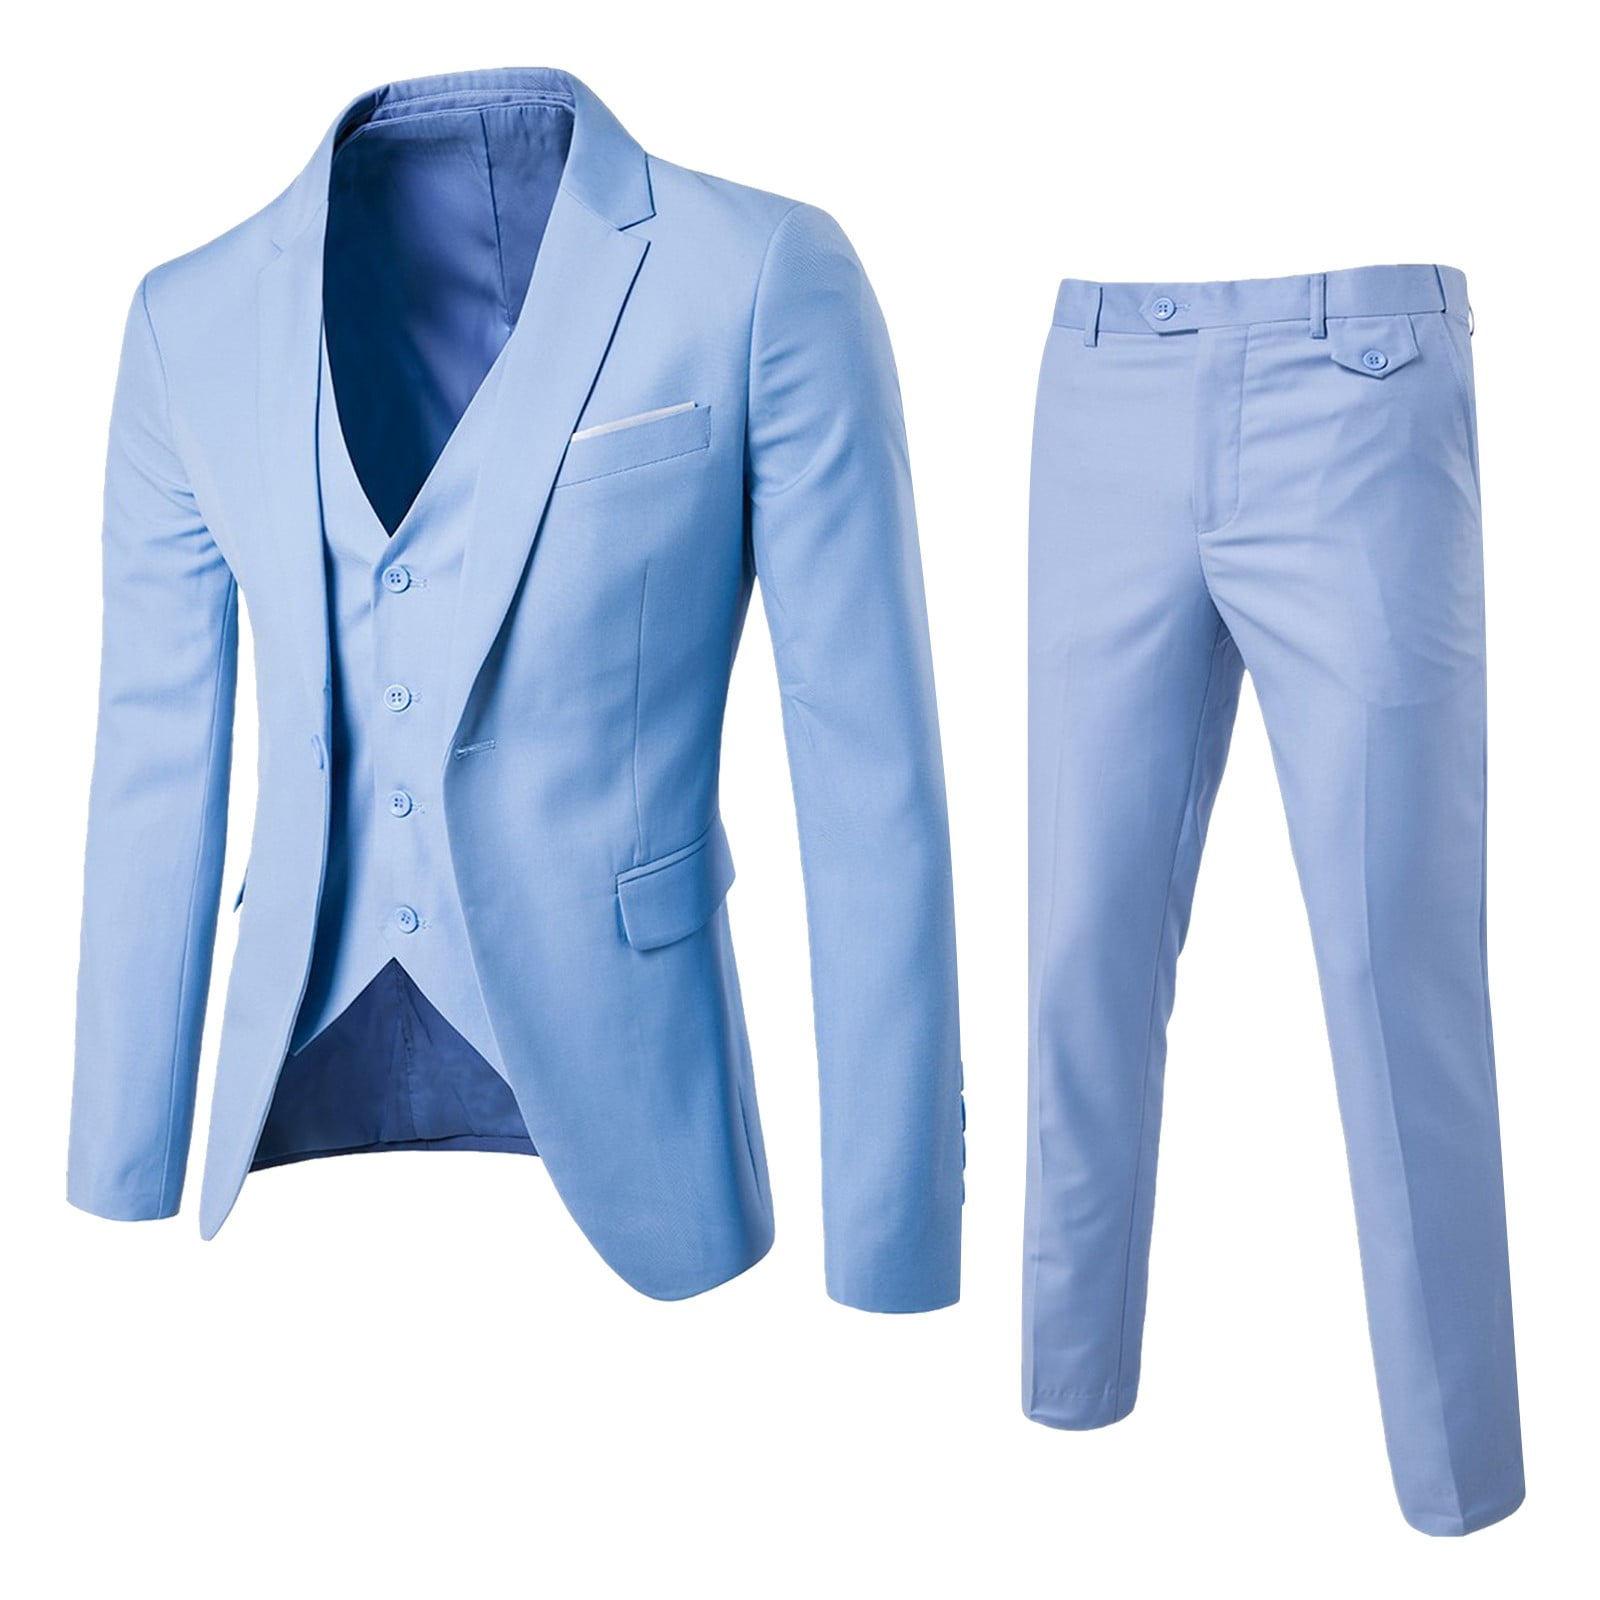 Suits Men’s Suit Slim 2 Piece Business Wedding Party Jacket Vest ...